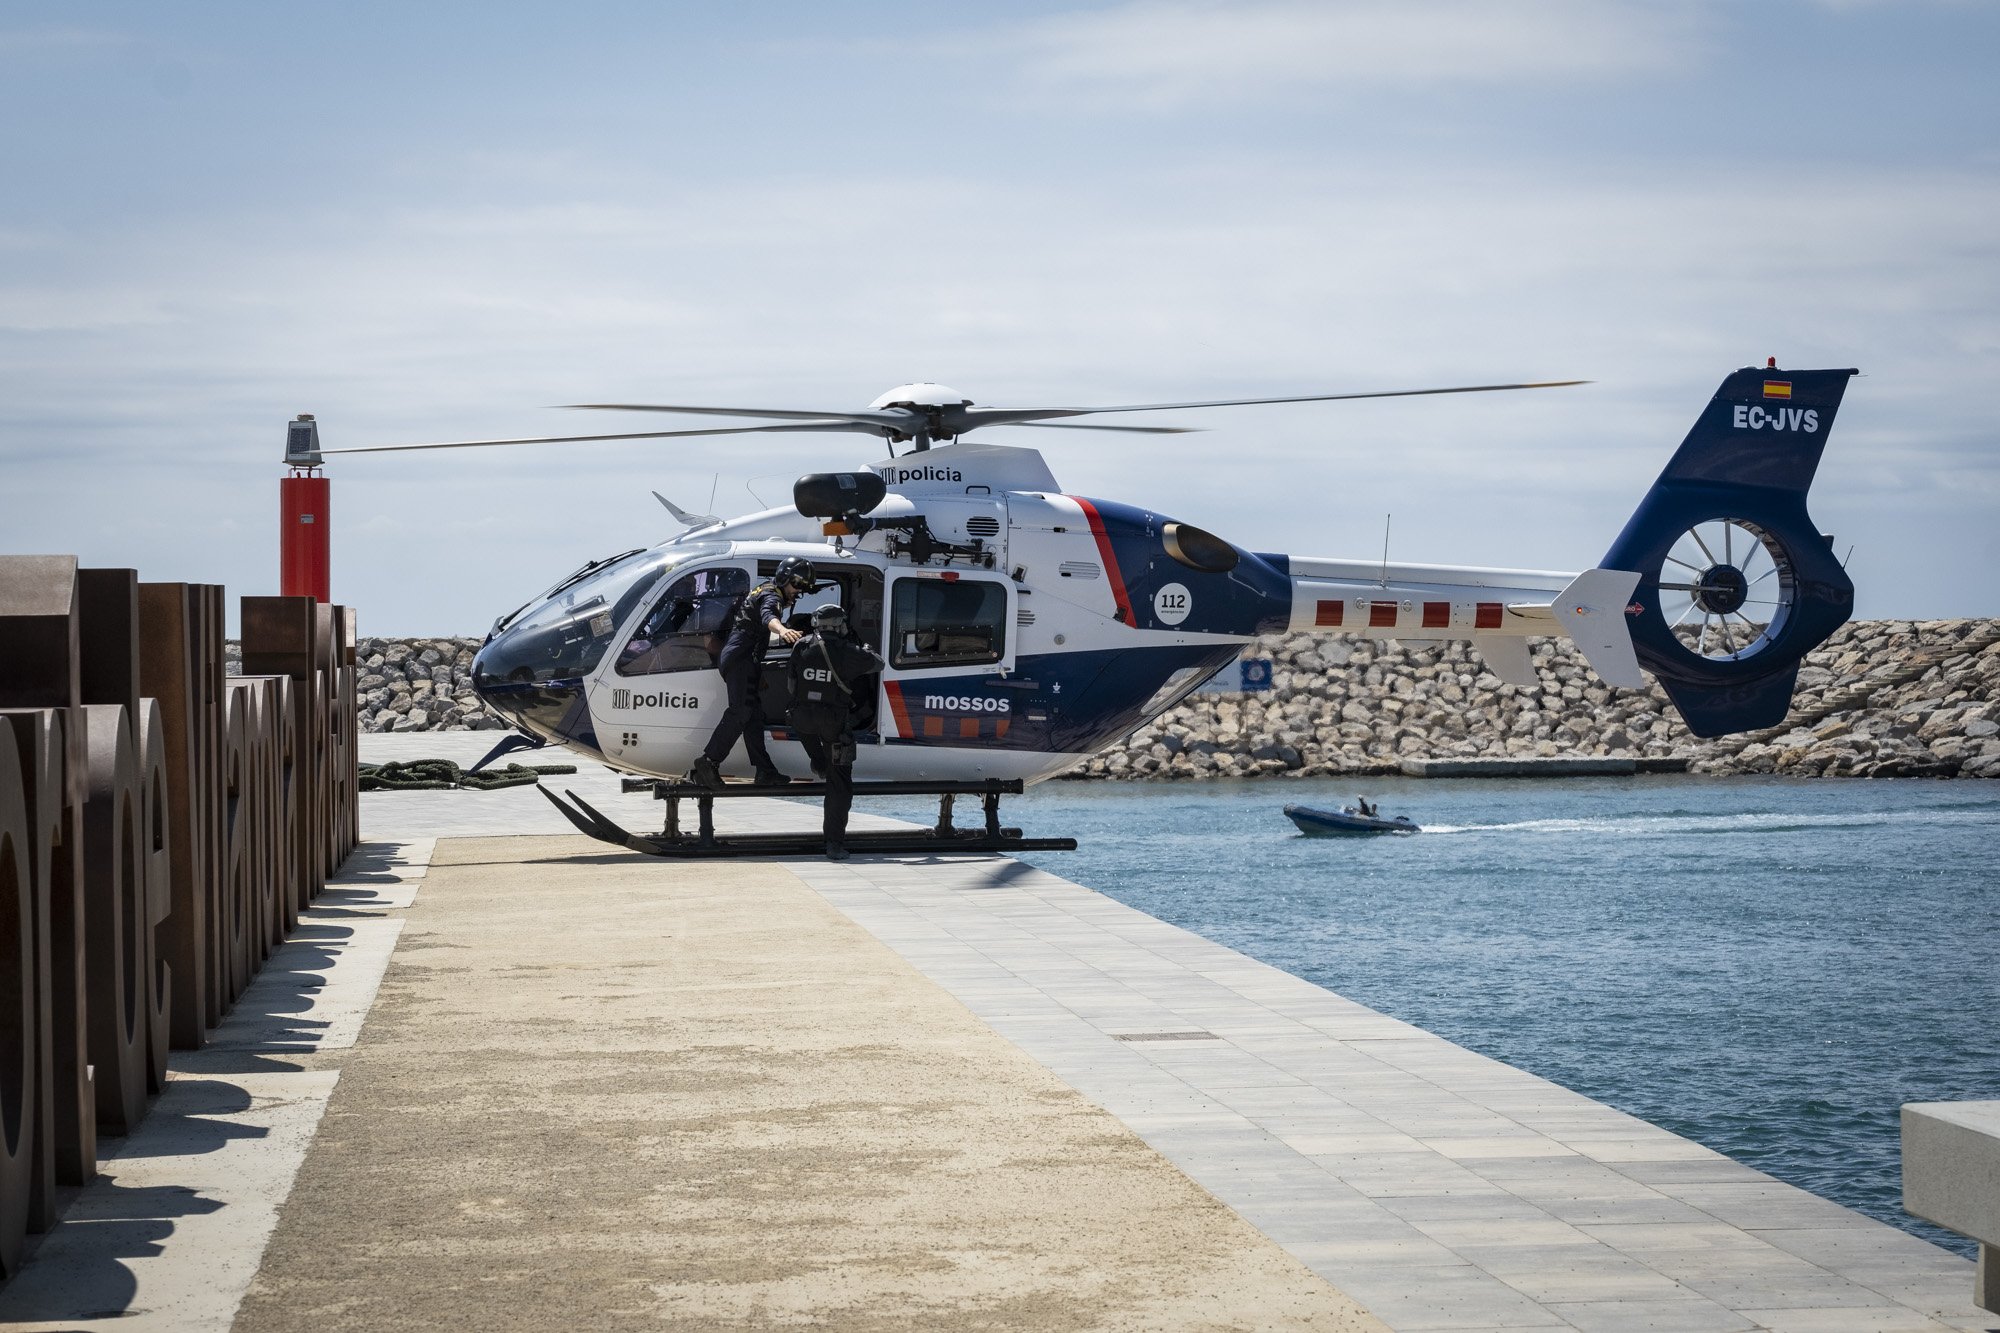 Simulacro mossos de escuadra detención narcos mar tierra y aire, Vilanova i la Geltrú GEI Helicóptero / Foto: Carlos Baglietto